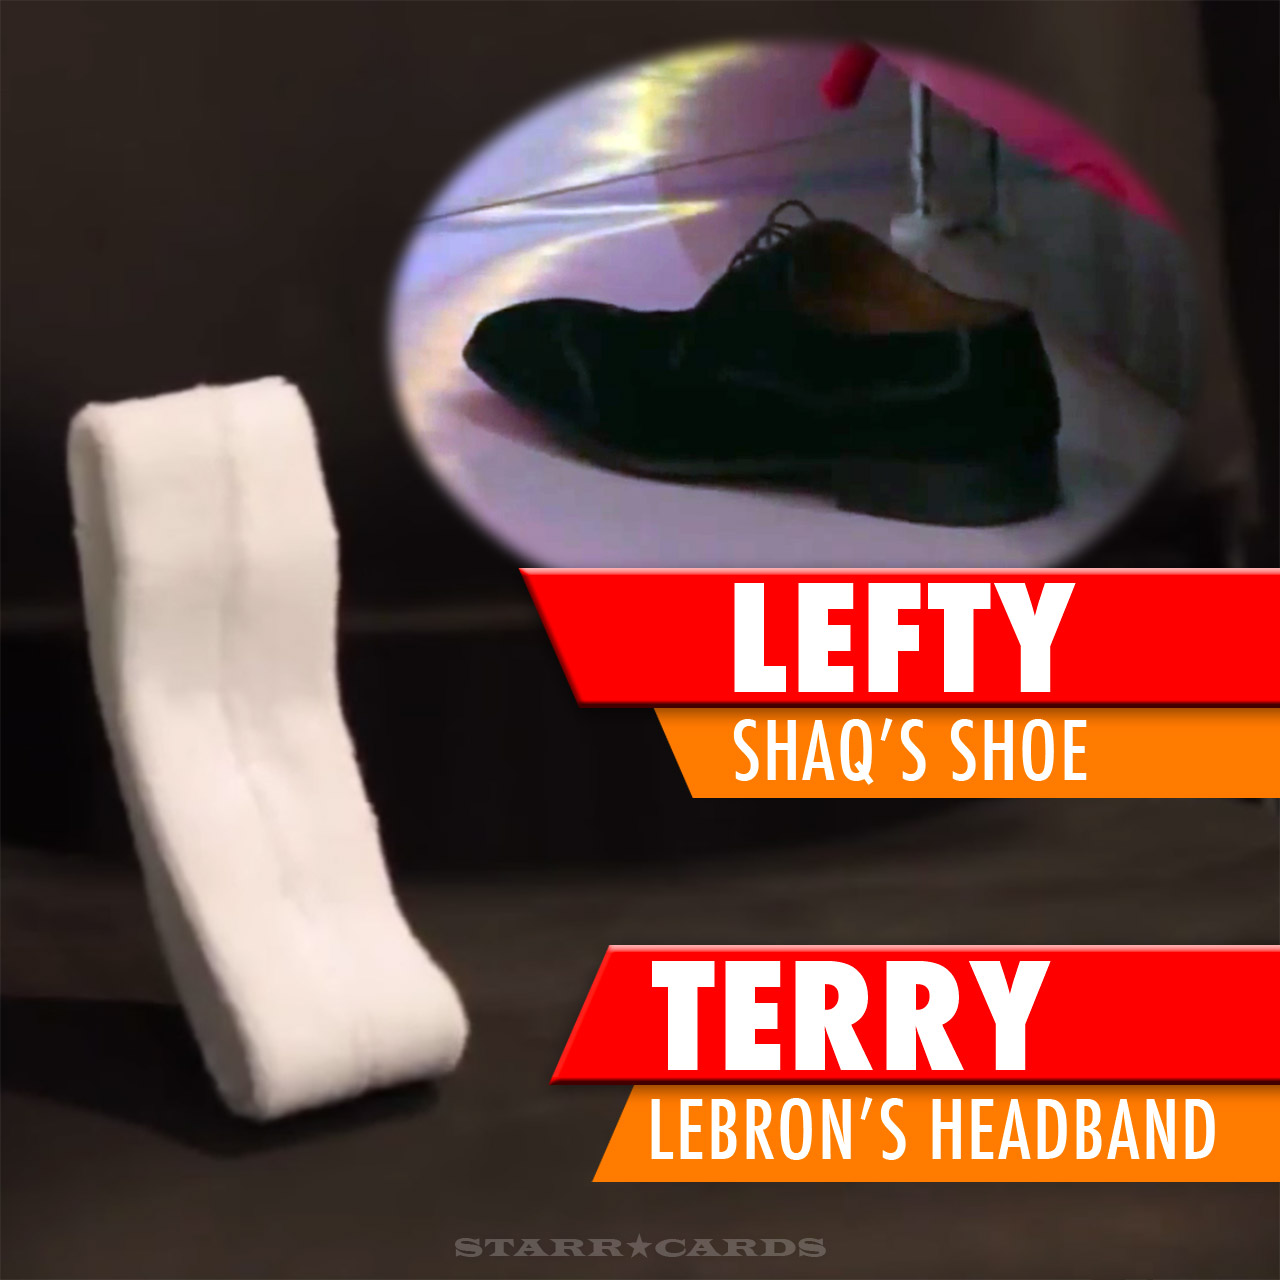 LeBron's headband and Shaq's shoe